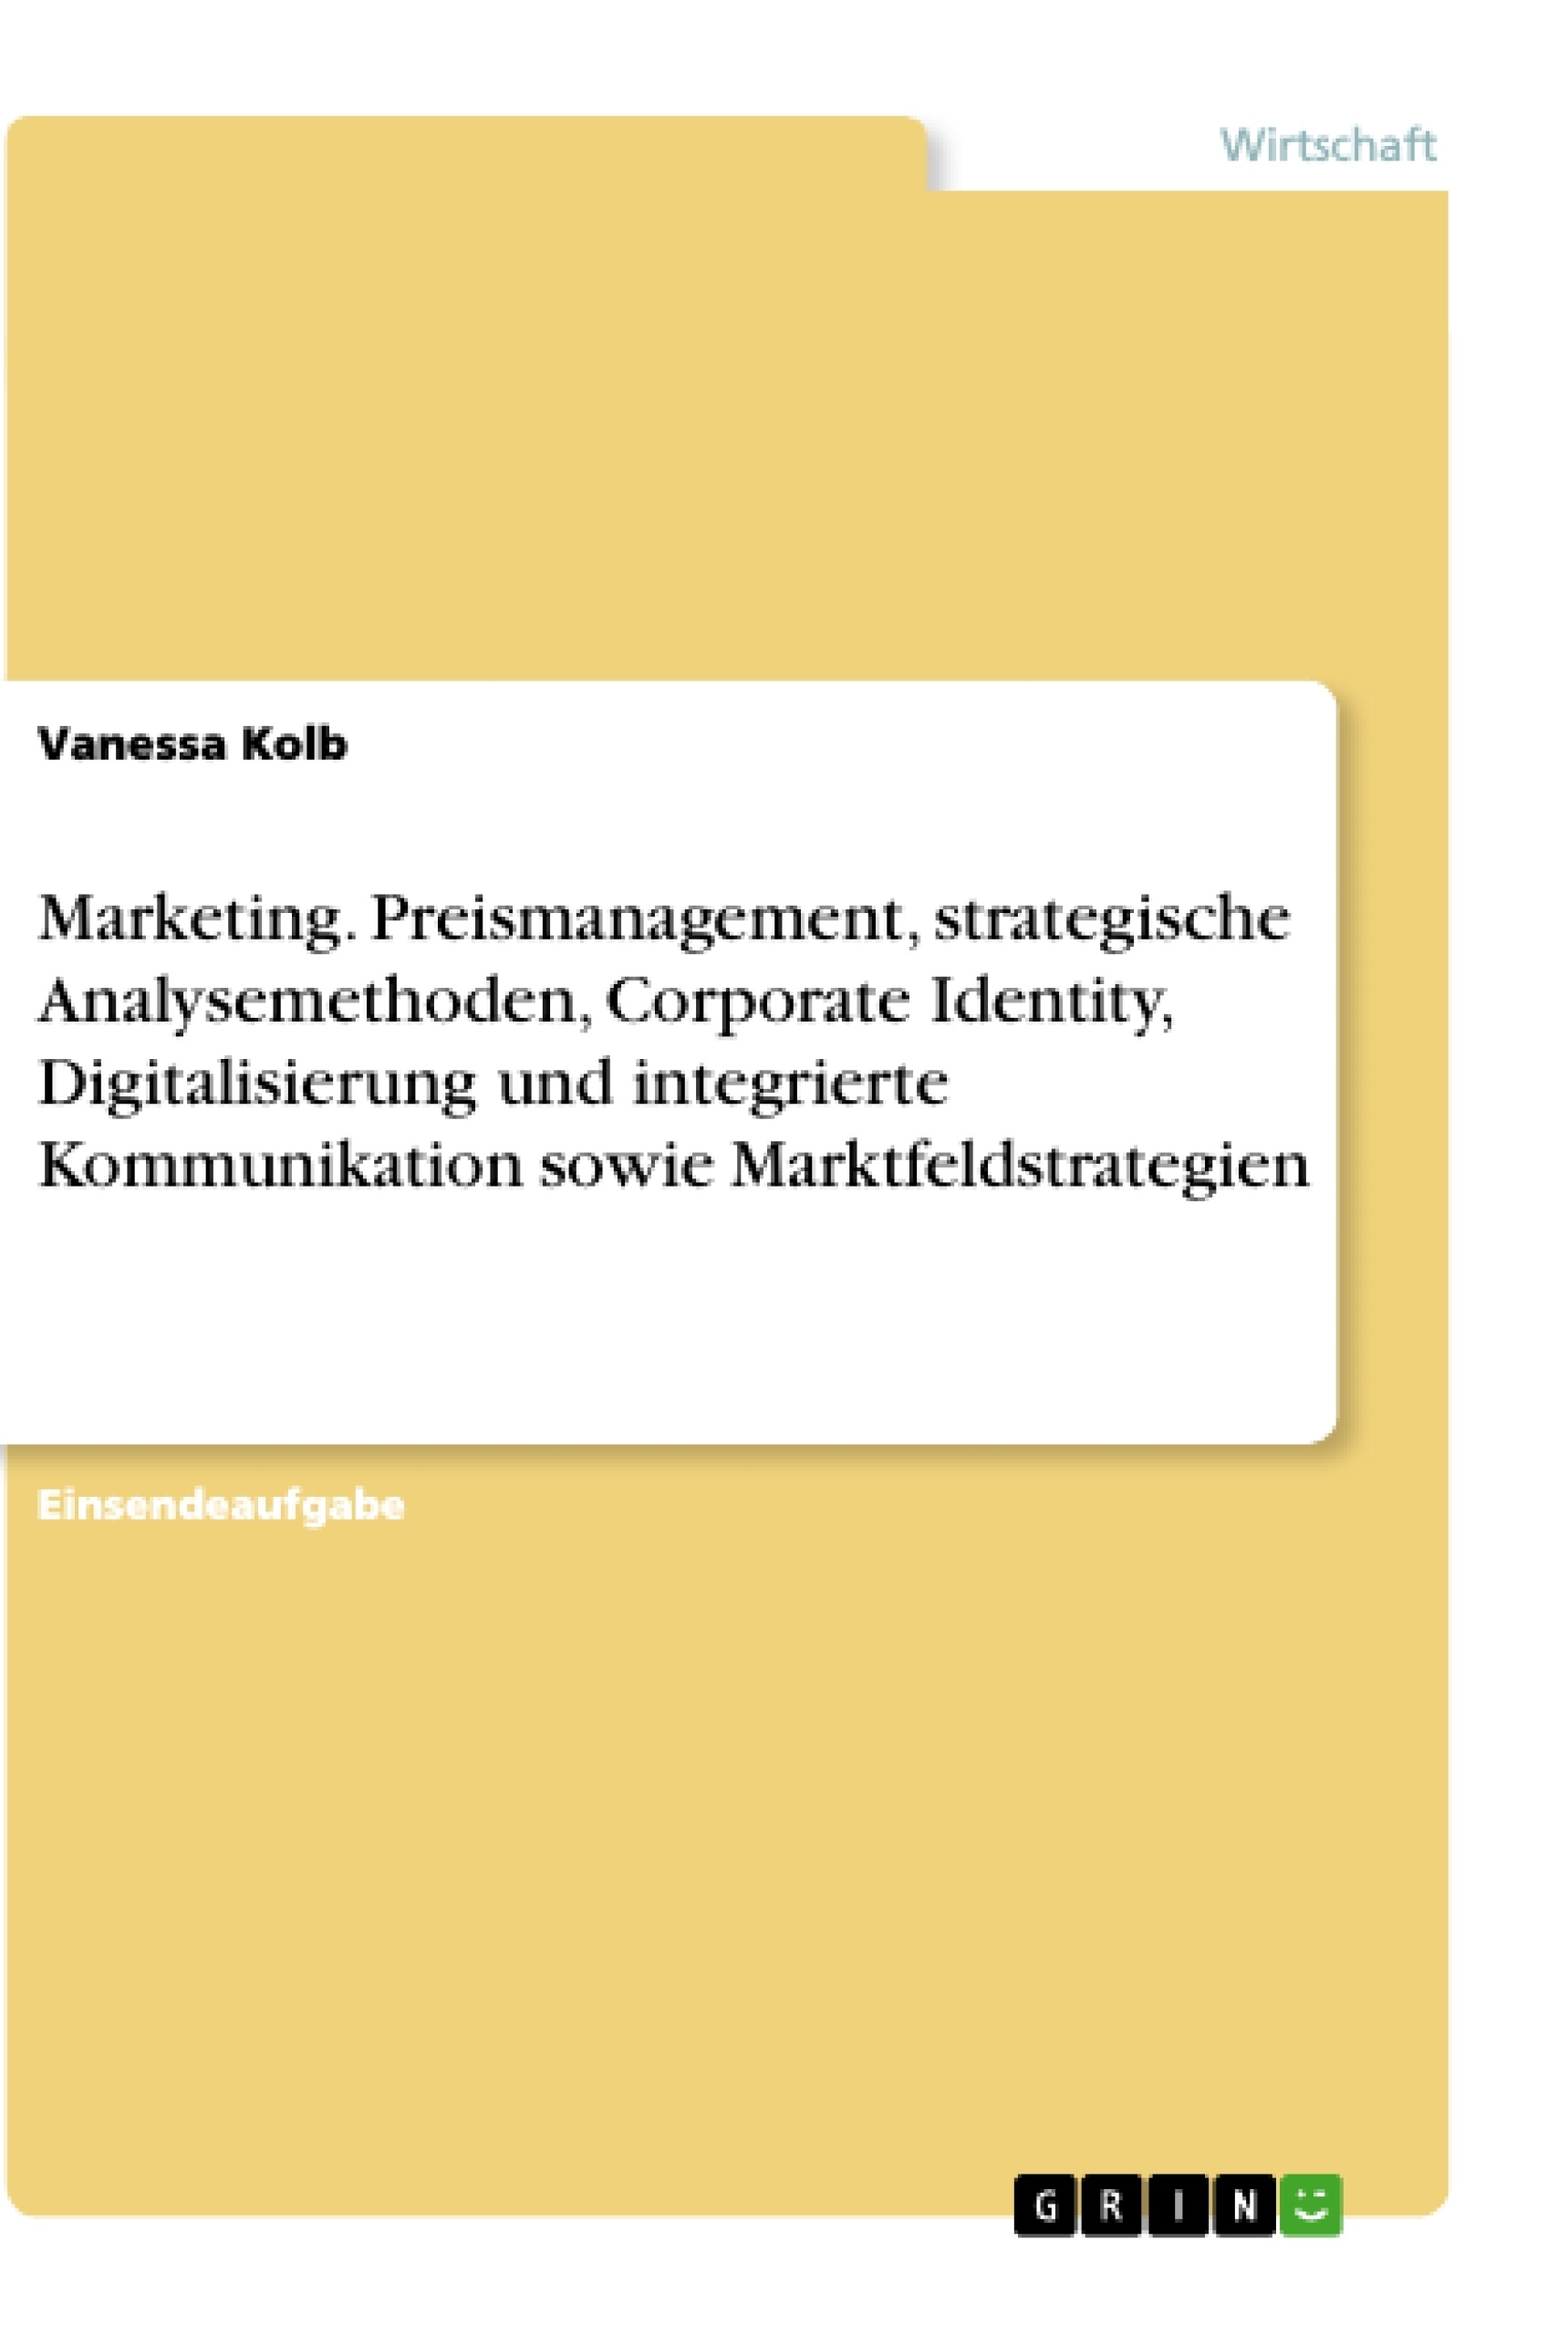 Titel: Marketing. Preismanagement, strategische Analysemethoden, Corporate Identity, Digitalisierung und integrierte Kommunikation sowie Marktfeldstrategien